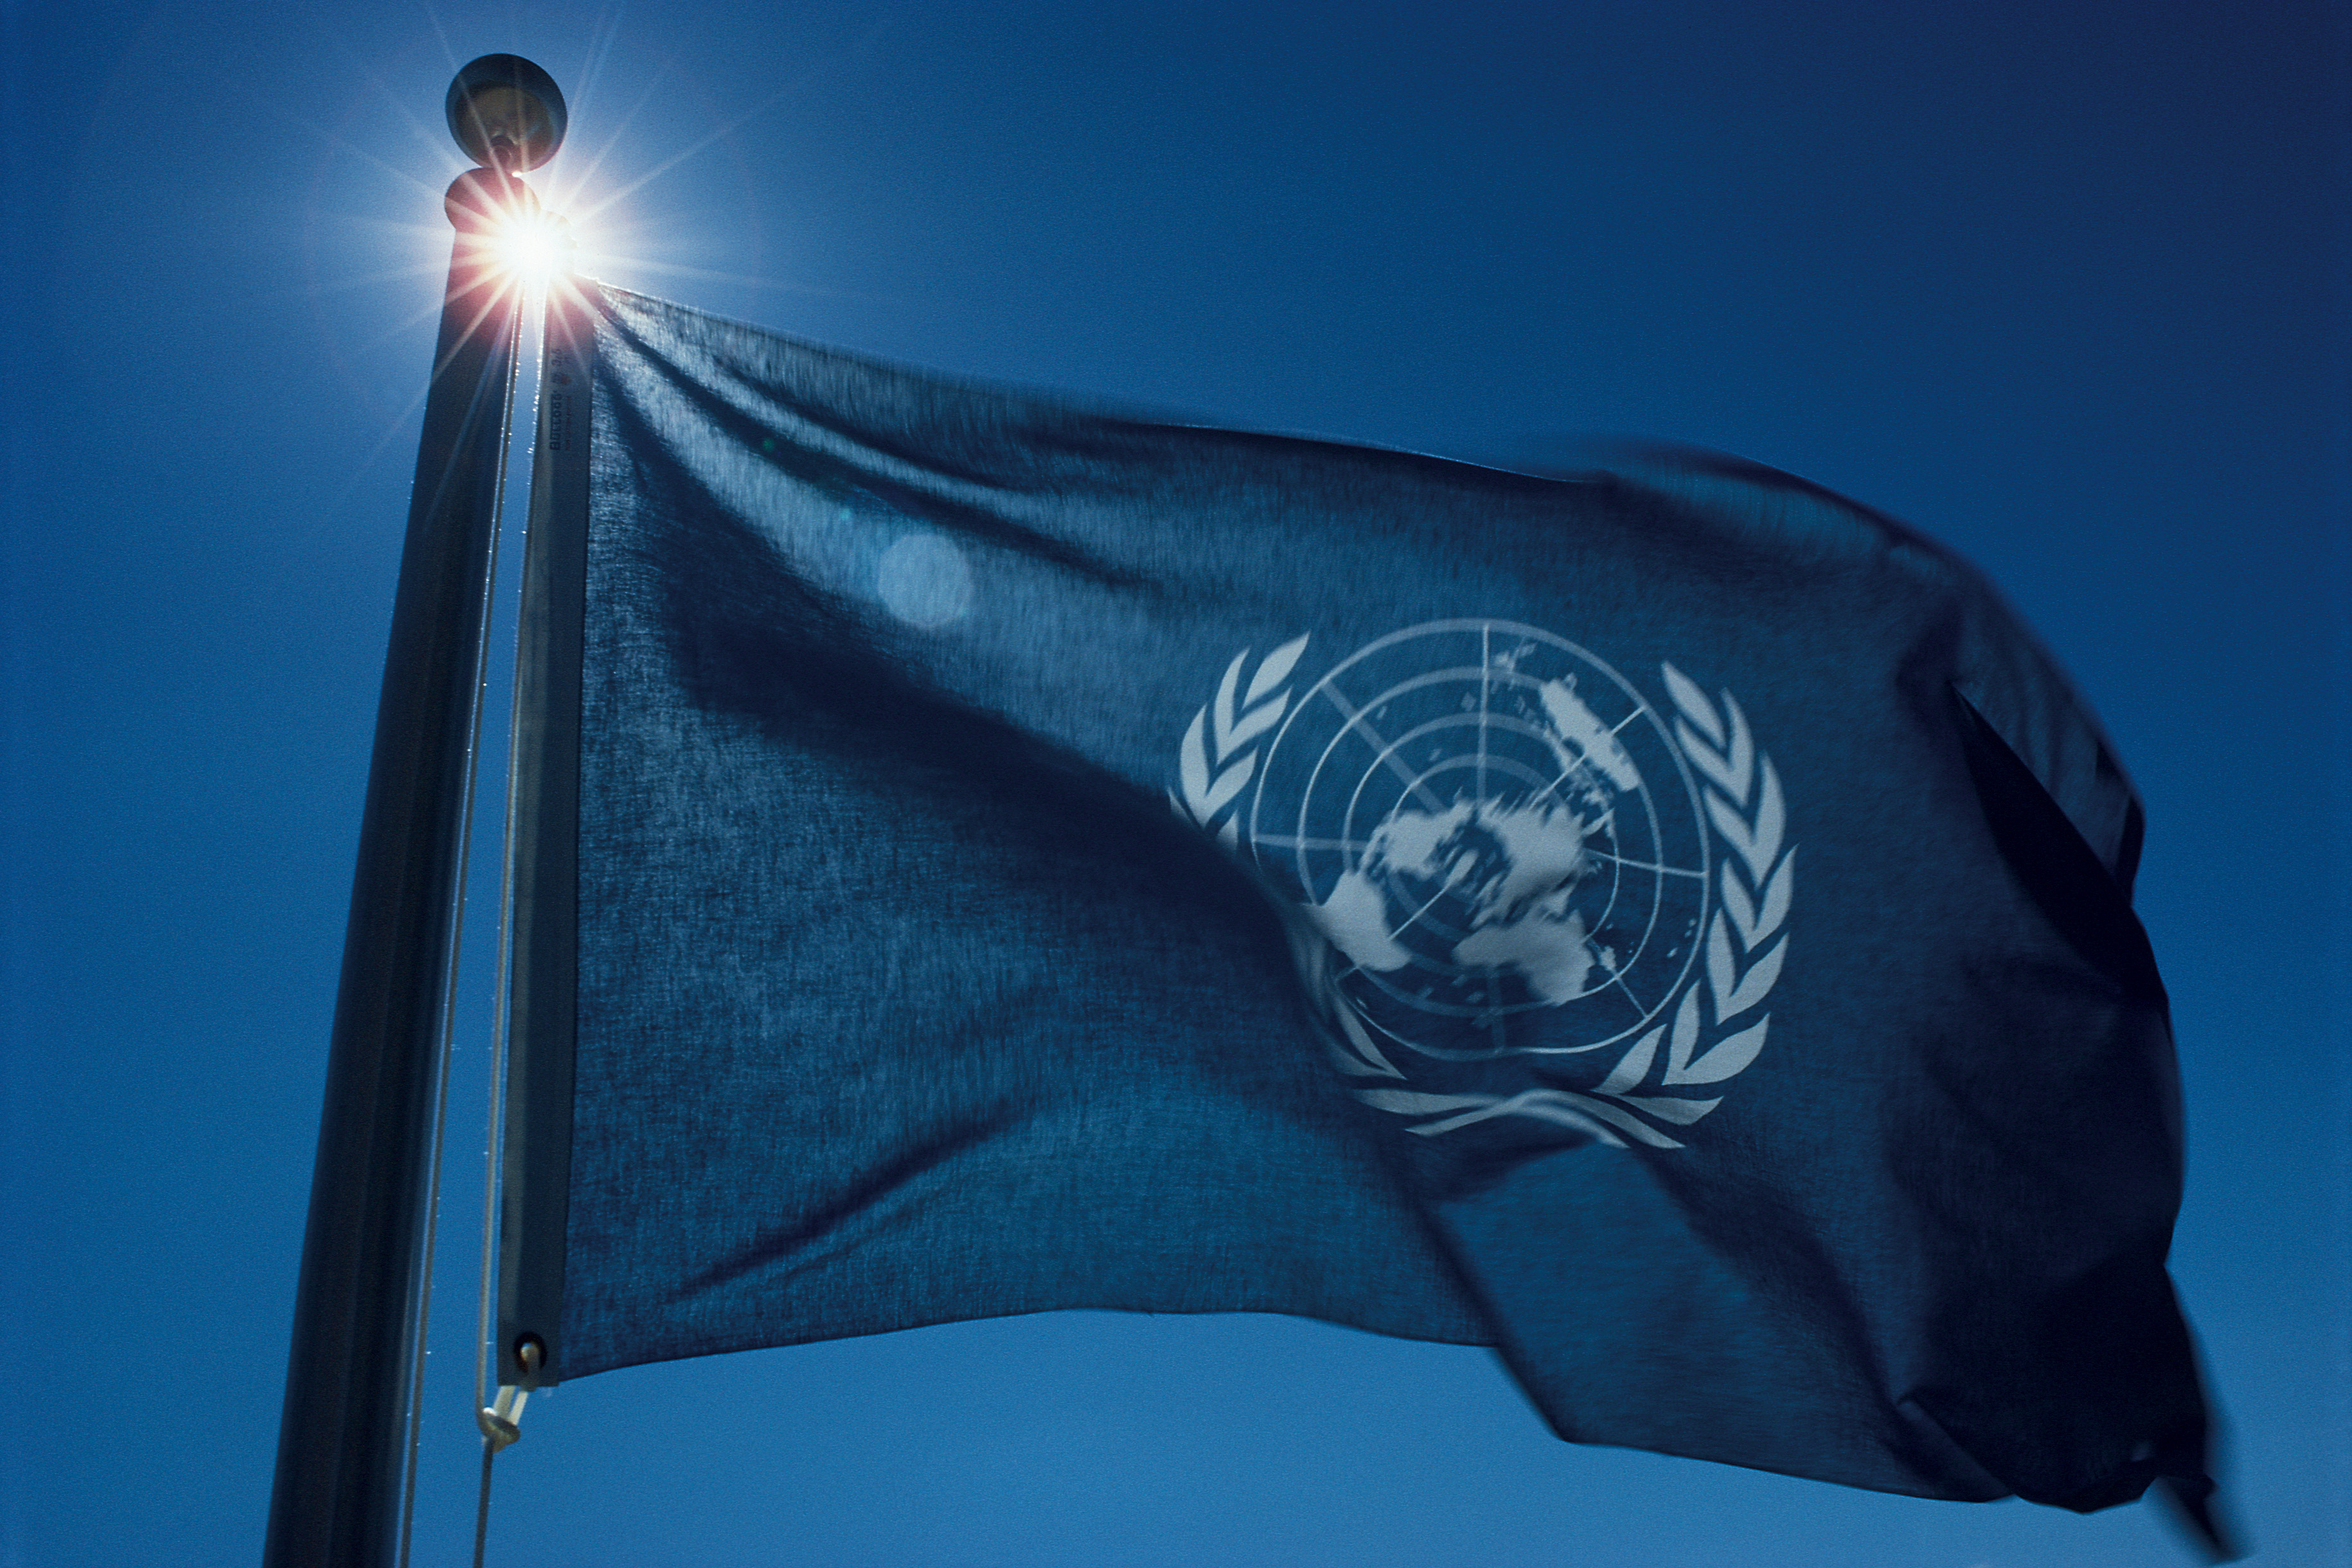 Wehende Flagge der Vereinten Nationen vor blauem Himmel